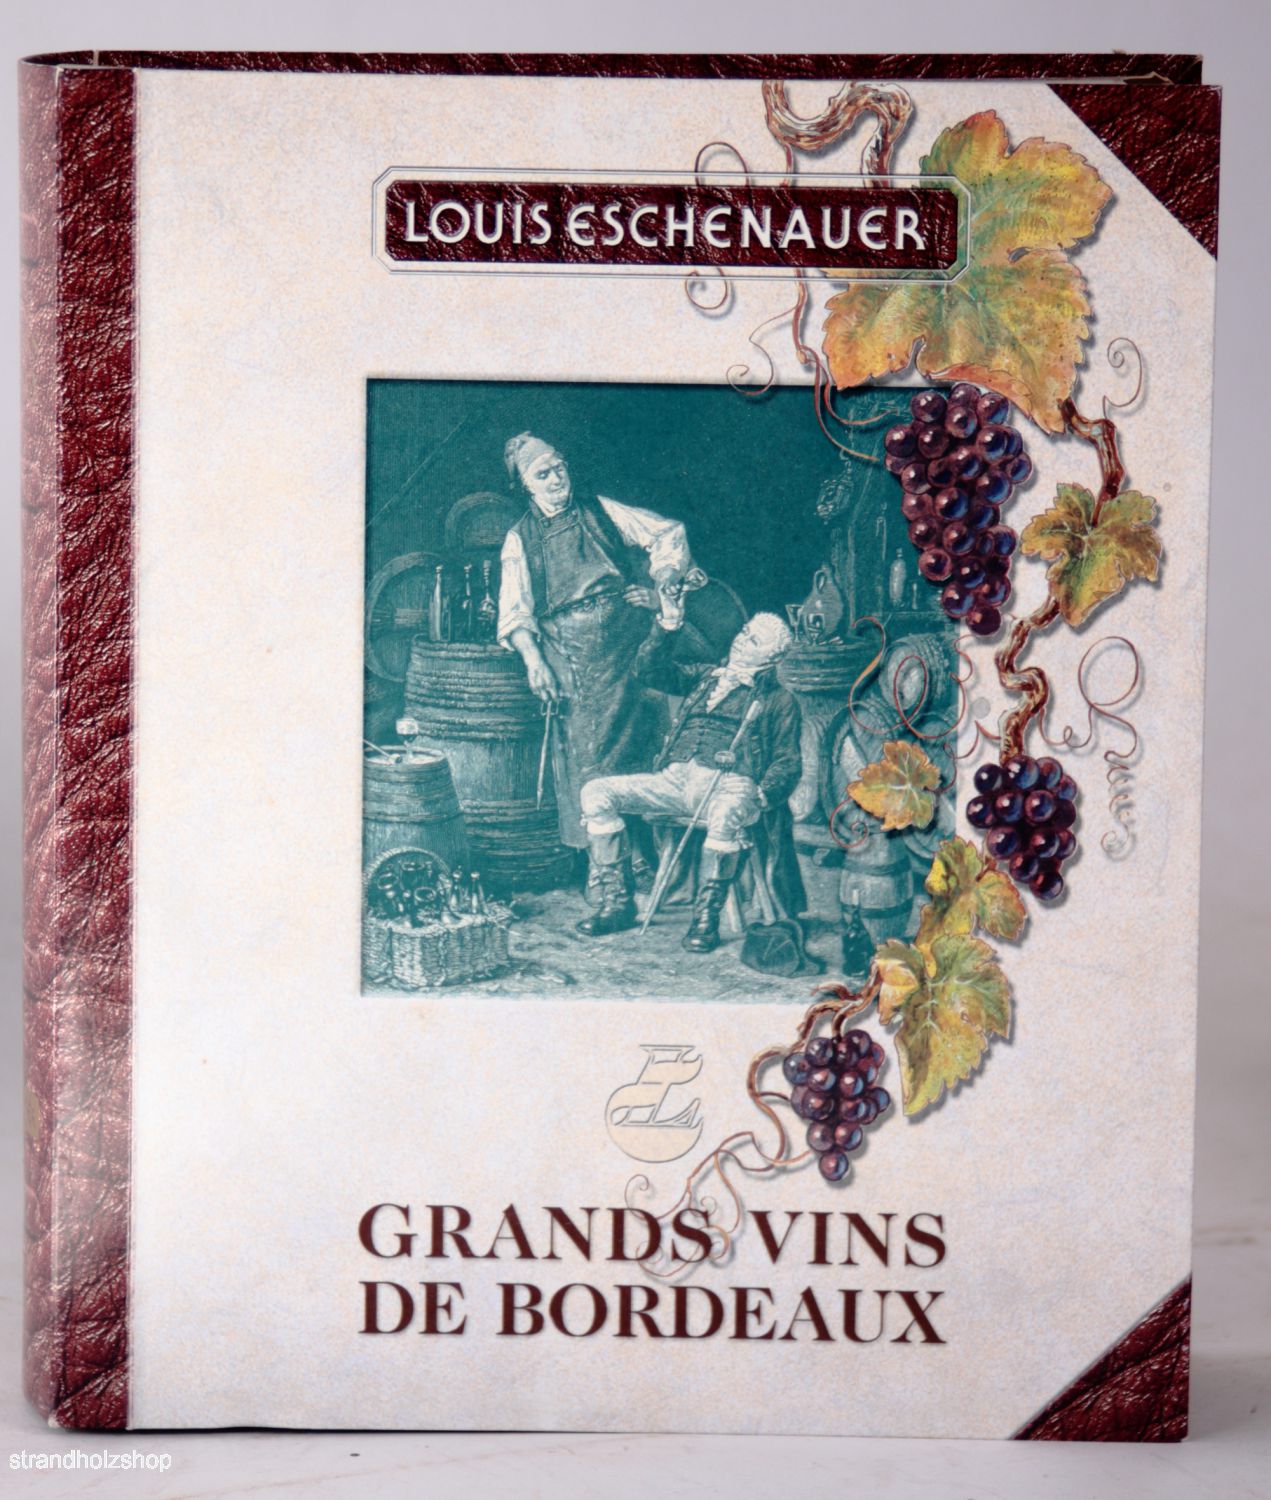 Coffret Louis Eschenauer avec vin